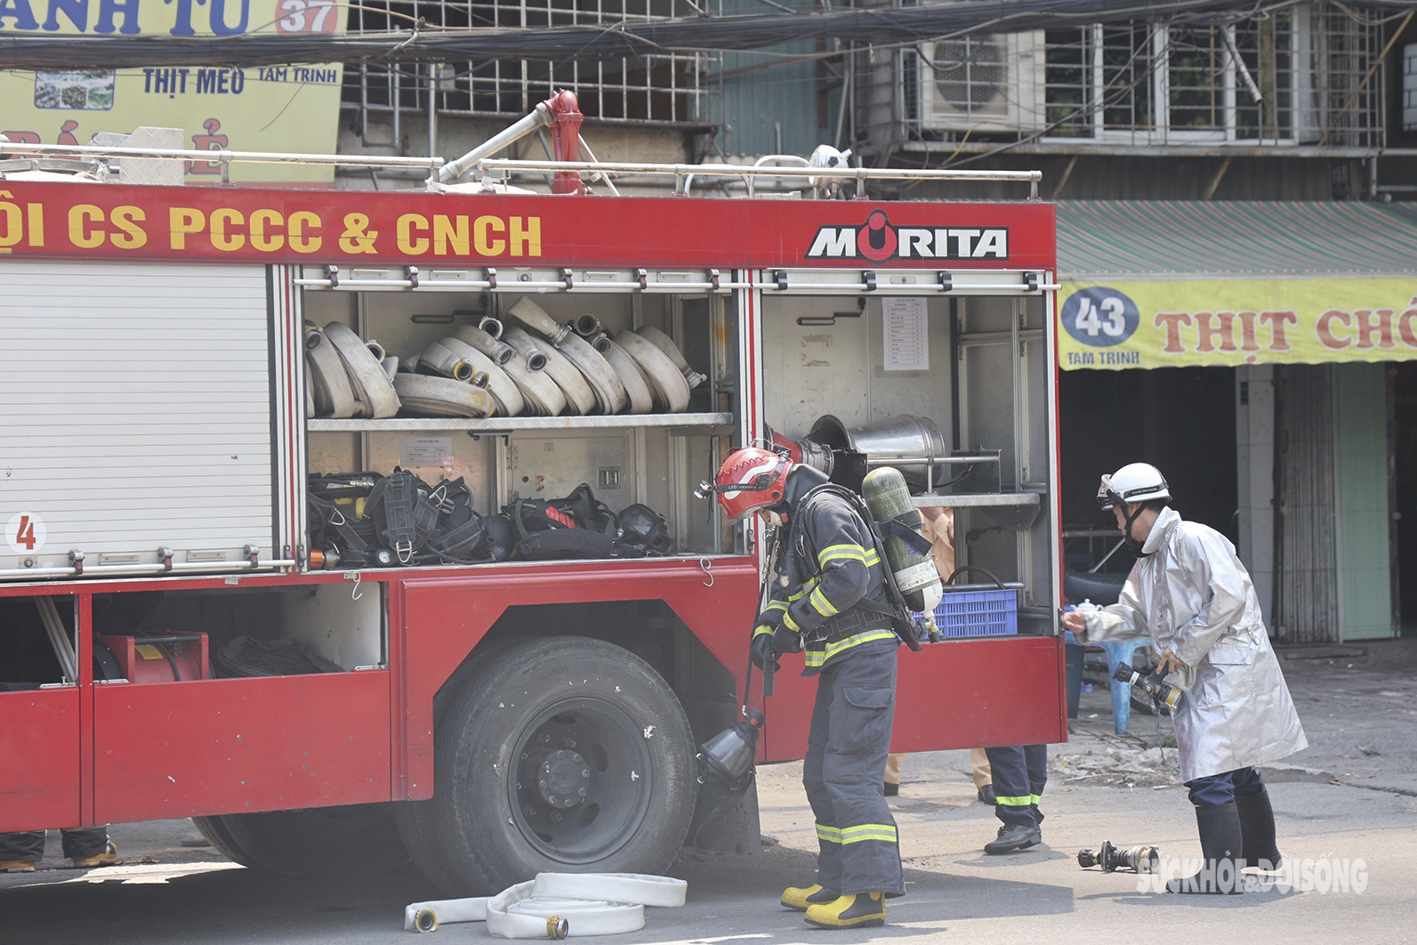 Cảnh sát PCCC&CNCH nhanh chóng dập tắt vụ hỏa hoạn trên đường Tam Trinh, Hà Nội - Ảnh 5.